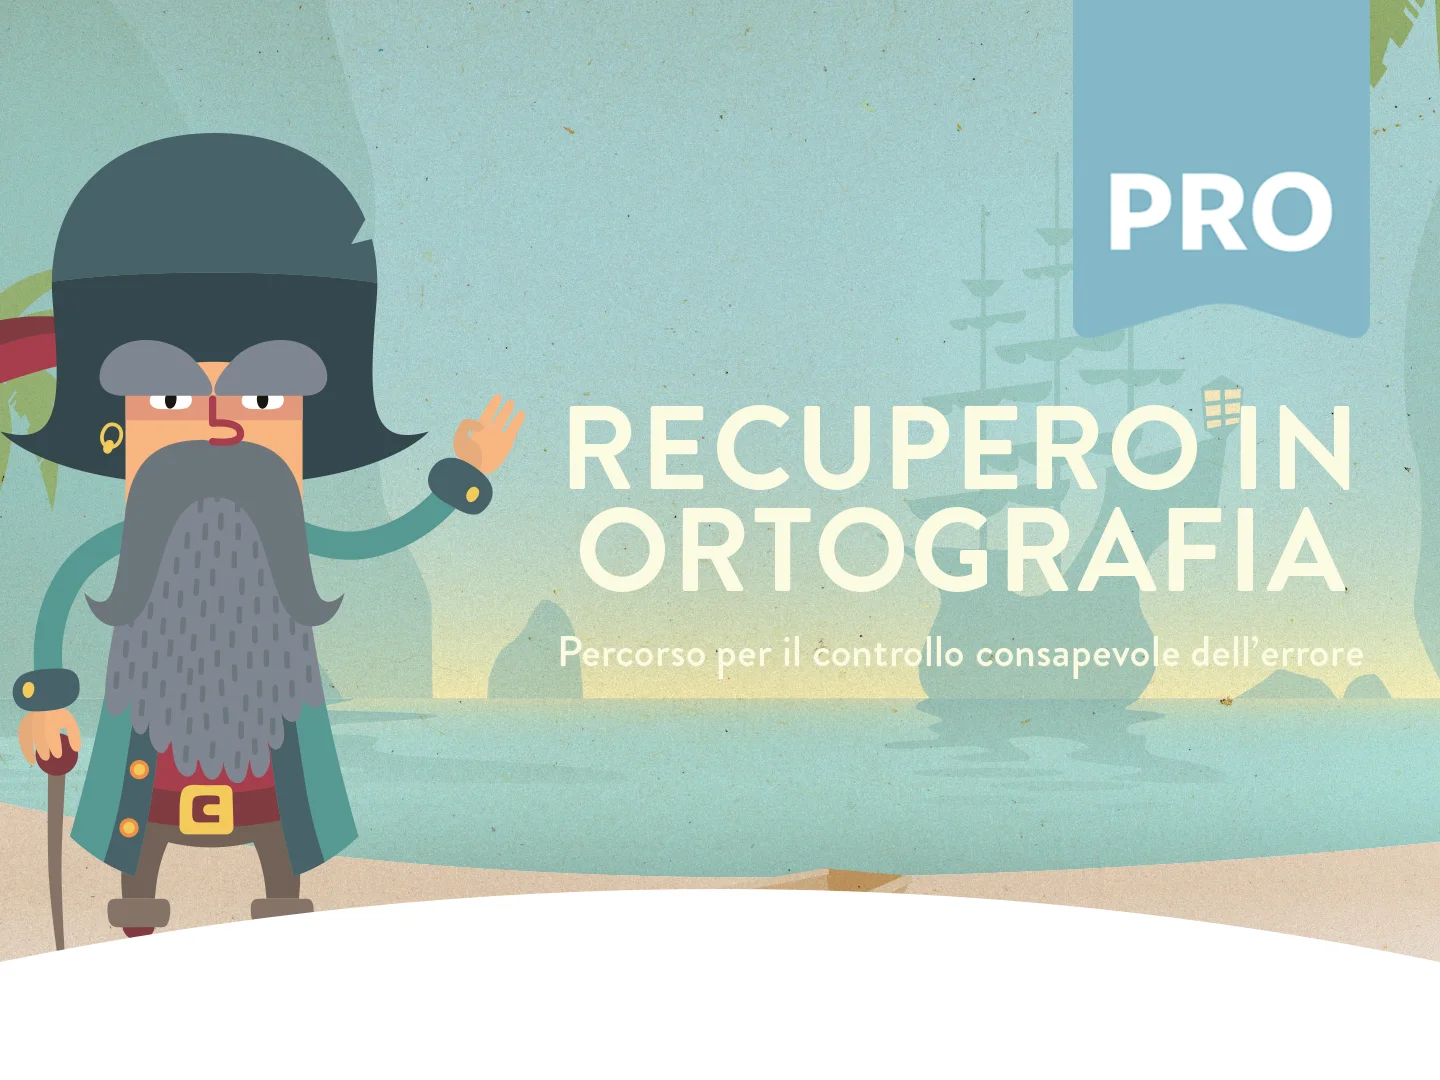 Recupero in ortografia PROFESSIONAL on Vimeo